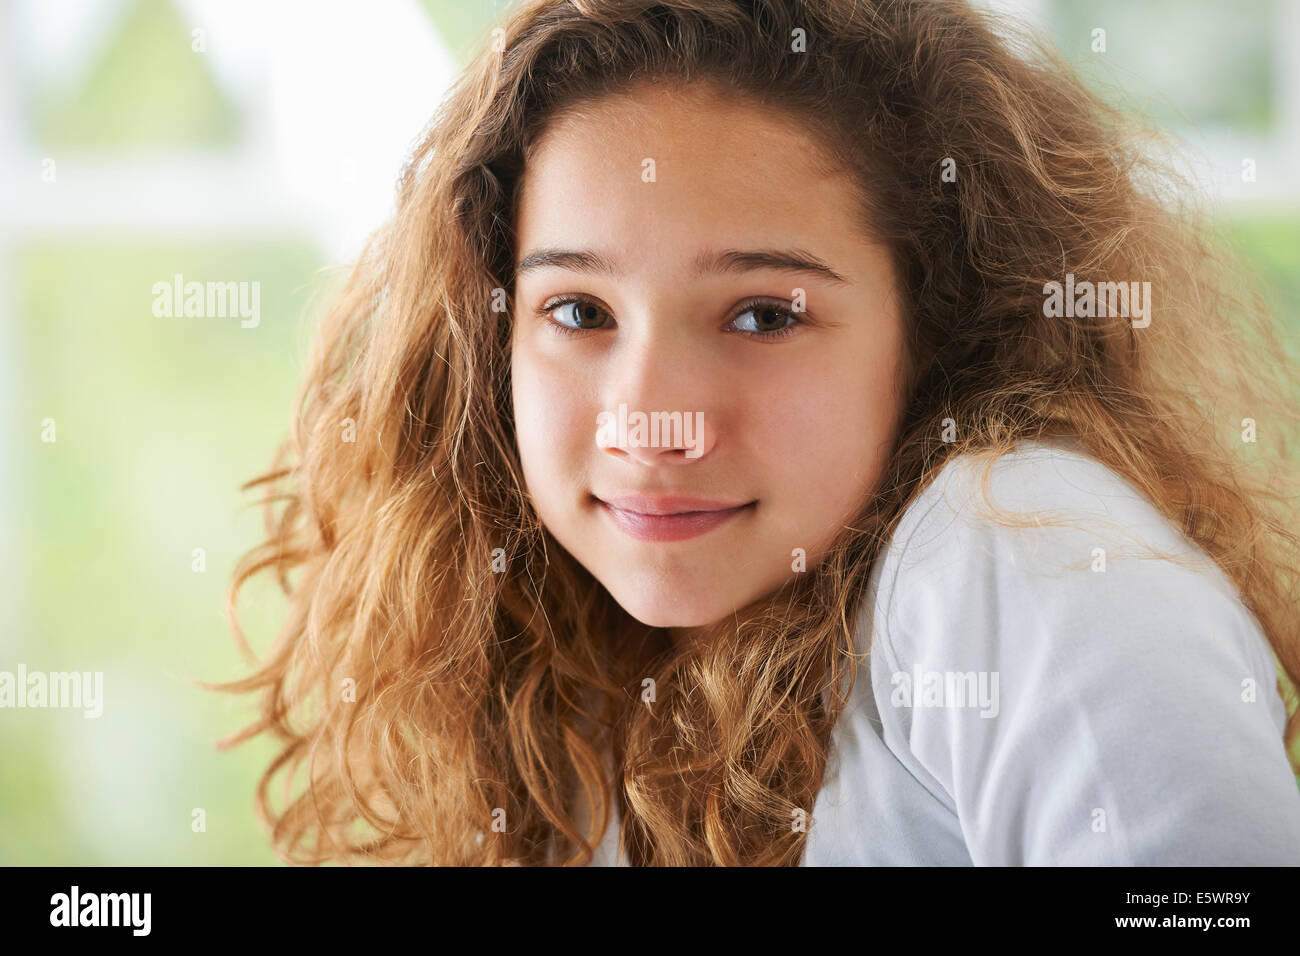 Jeune fille avec les cheveux bruns, smiling, portrait Banque D'Images